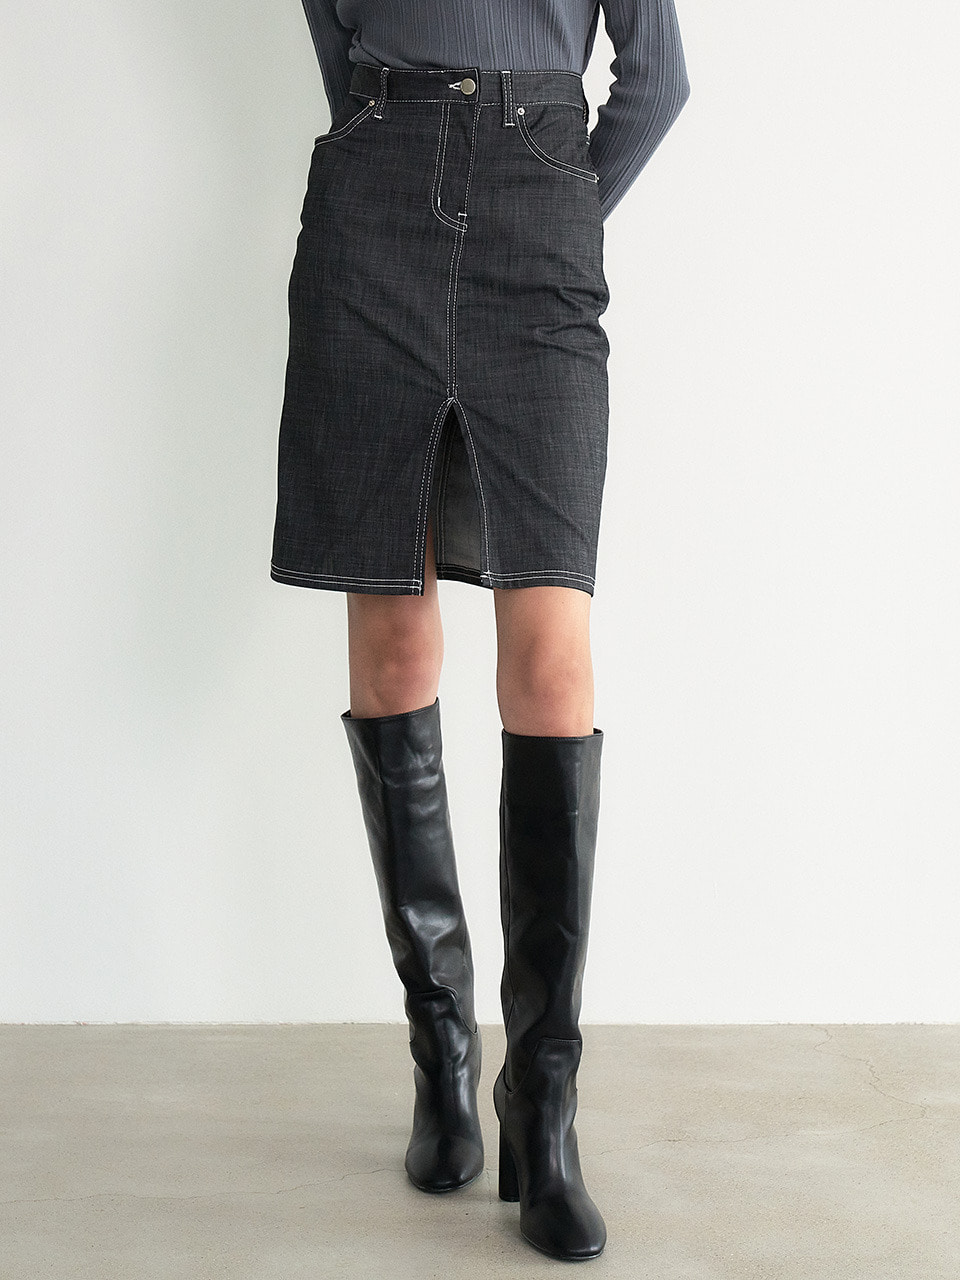 Washable Denim-like mini skirt (Grey)